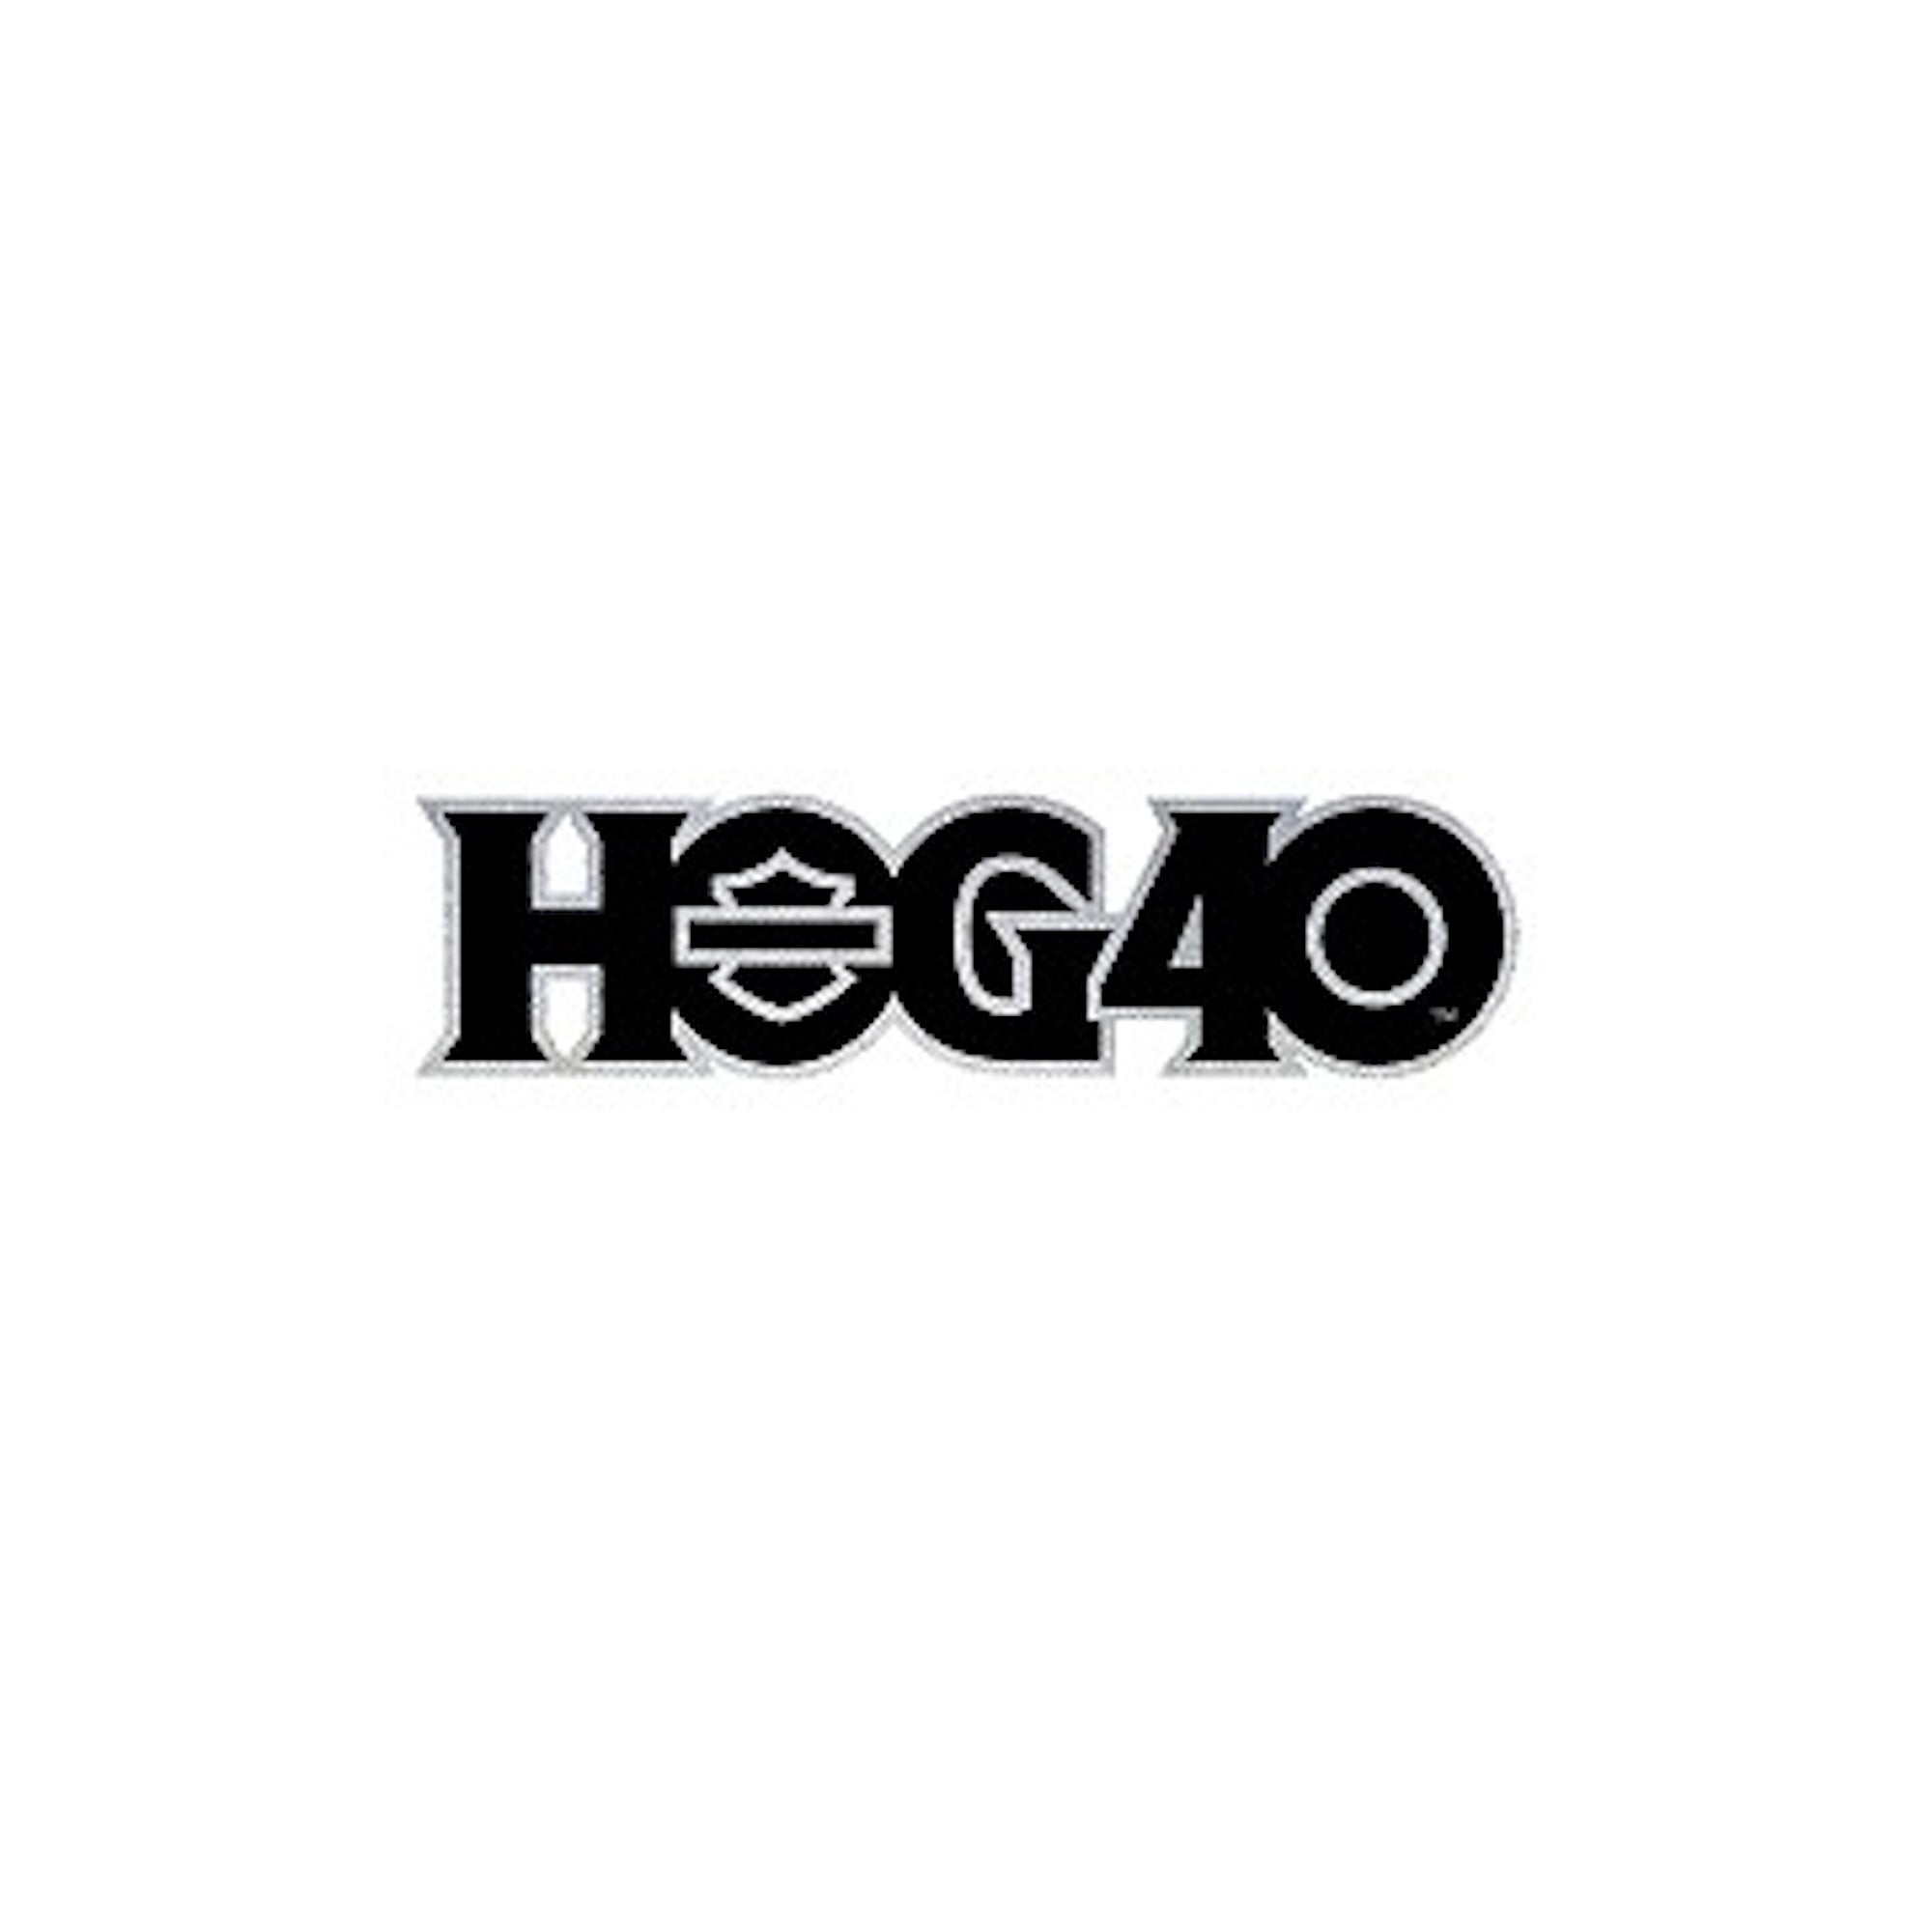 HOG40 Logo-Patch – Klein